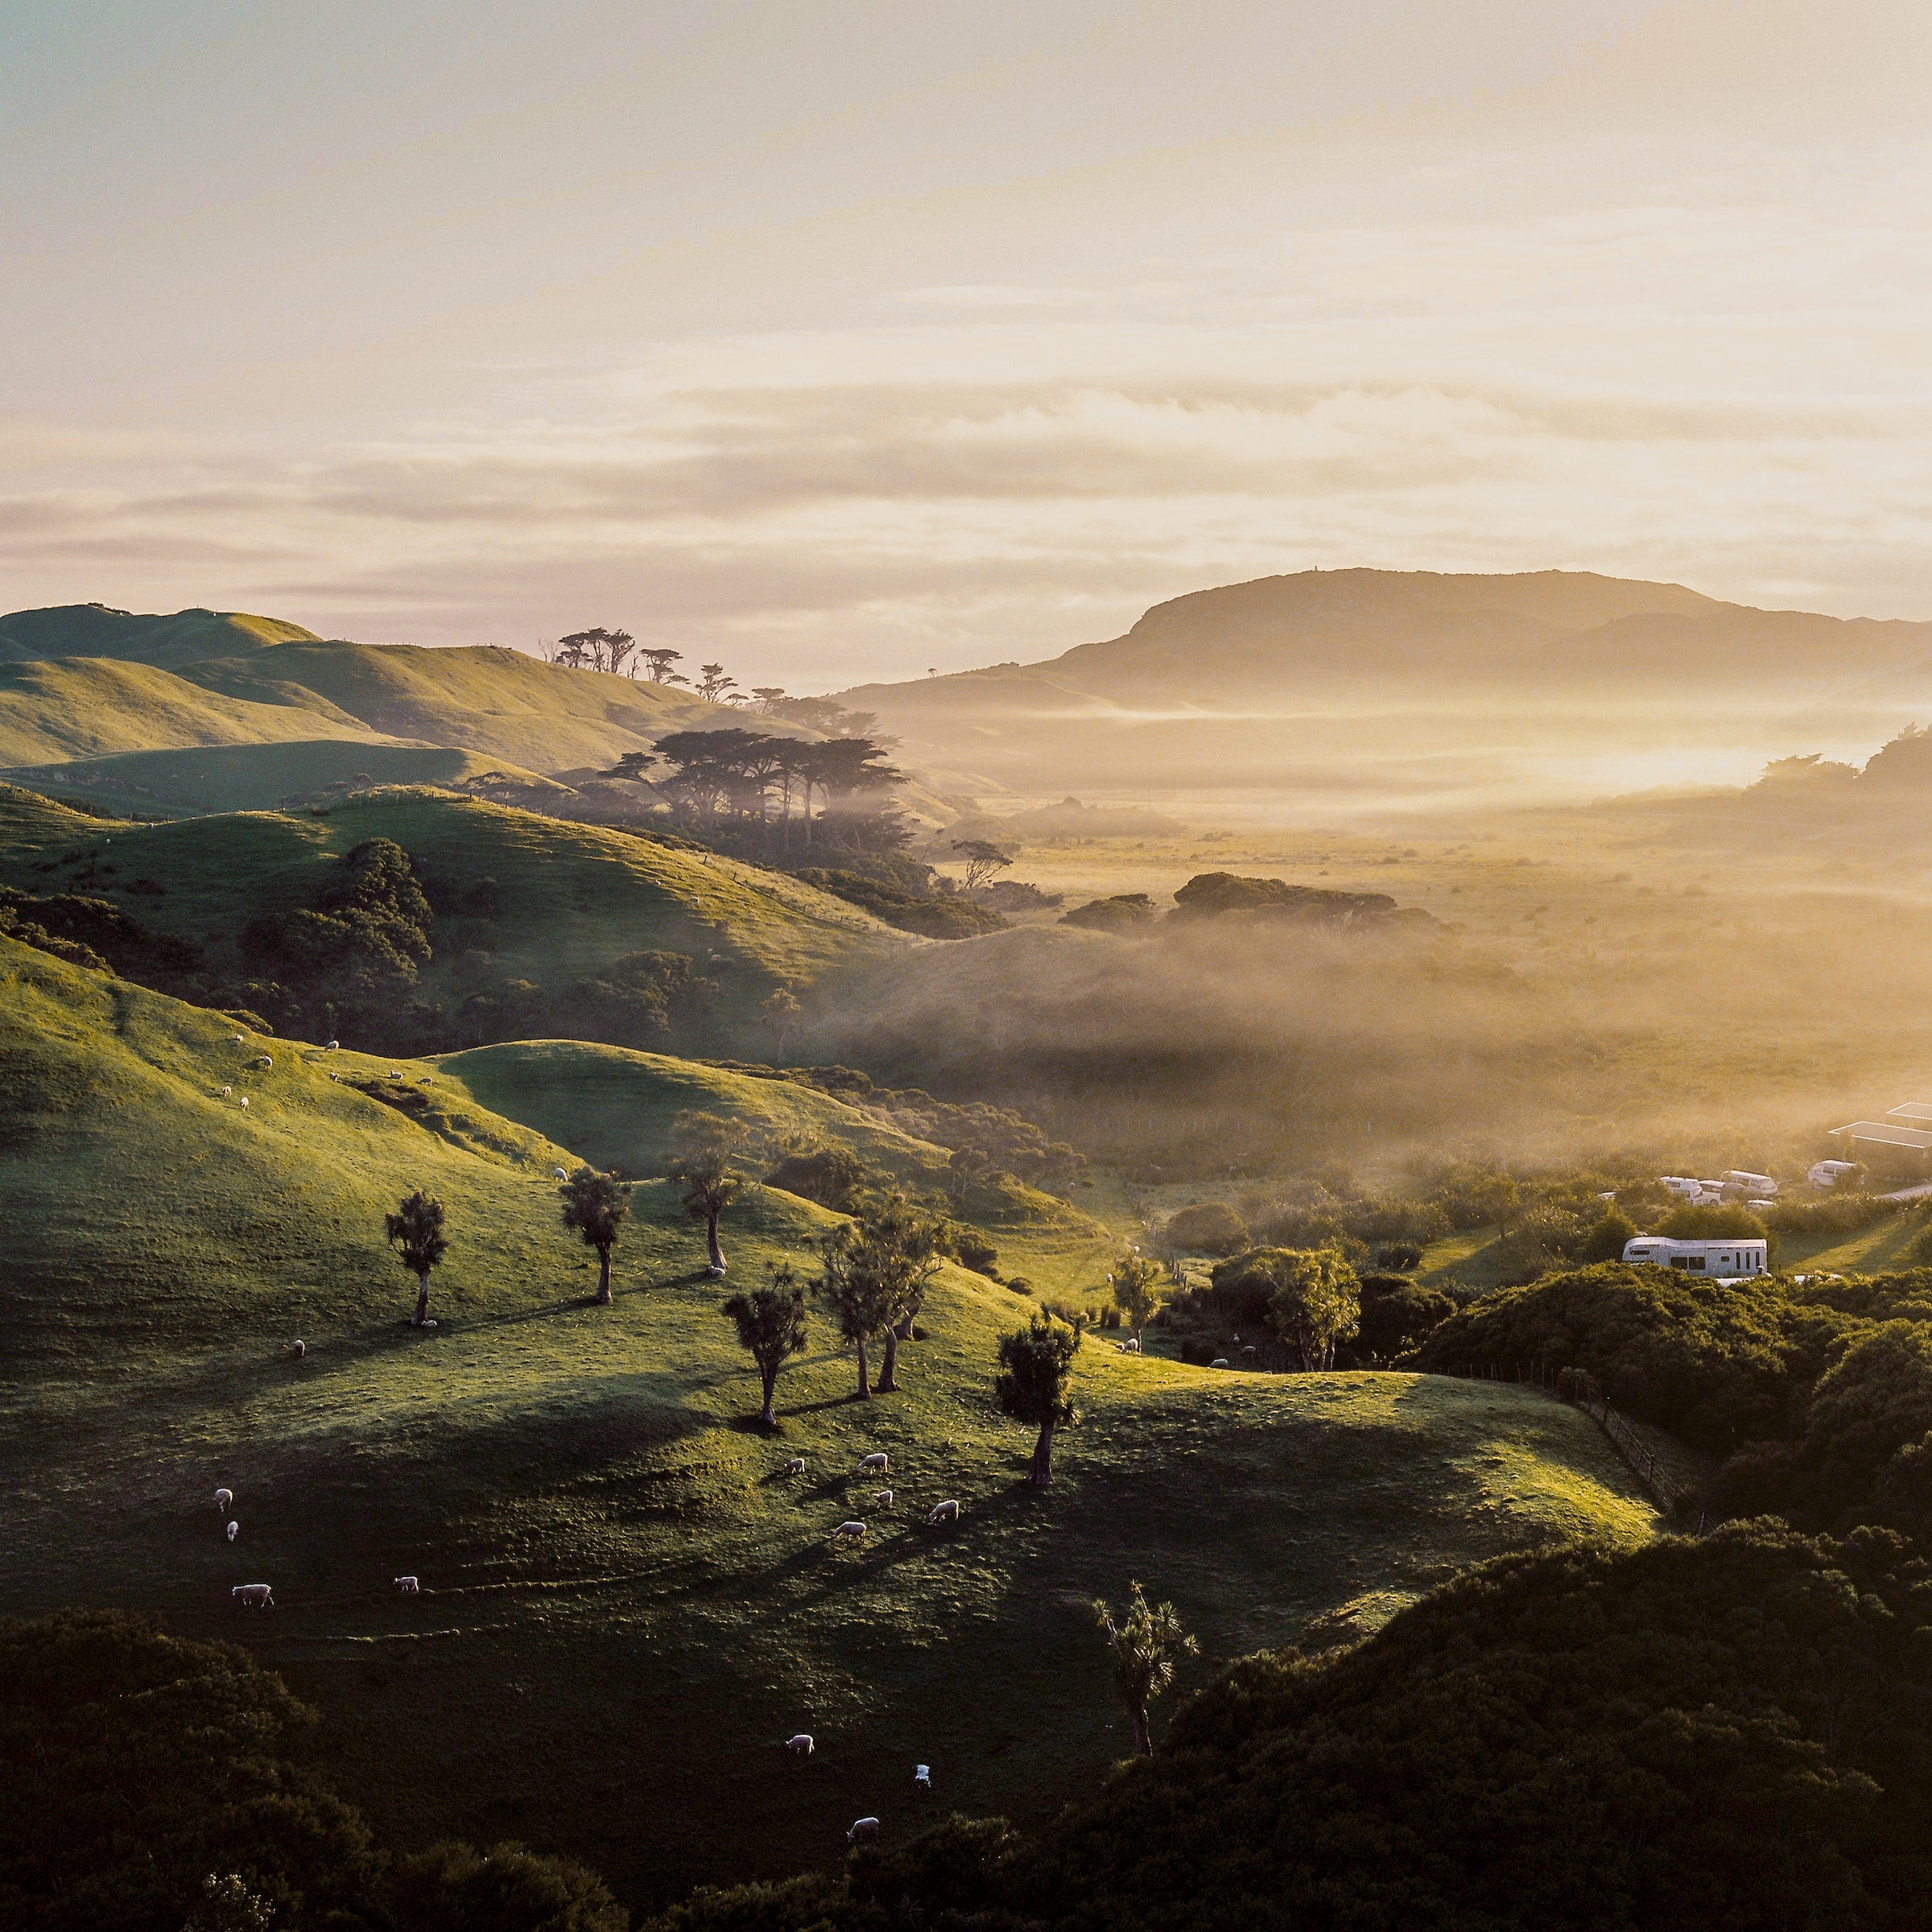 Image of New Zealand landscape during sunrise..